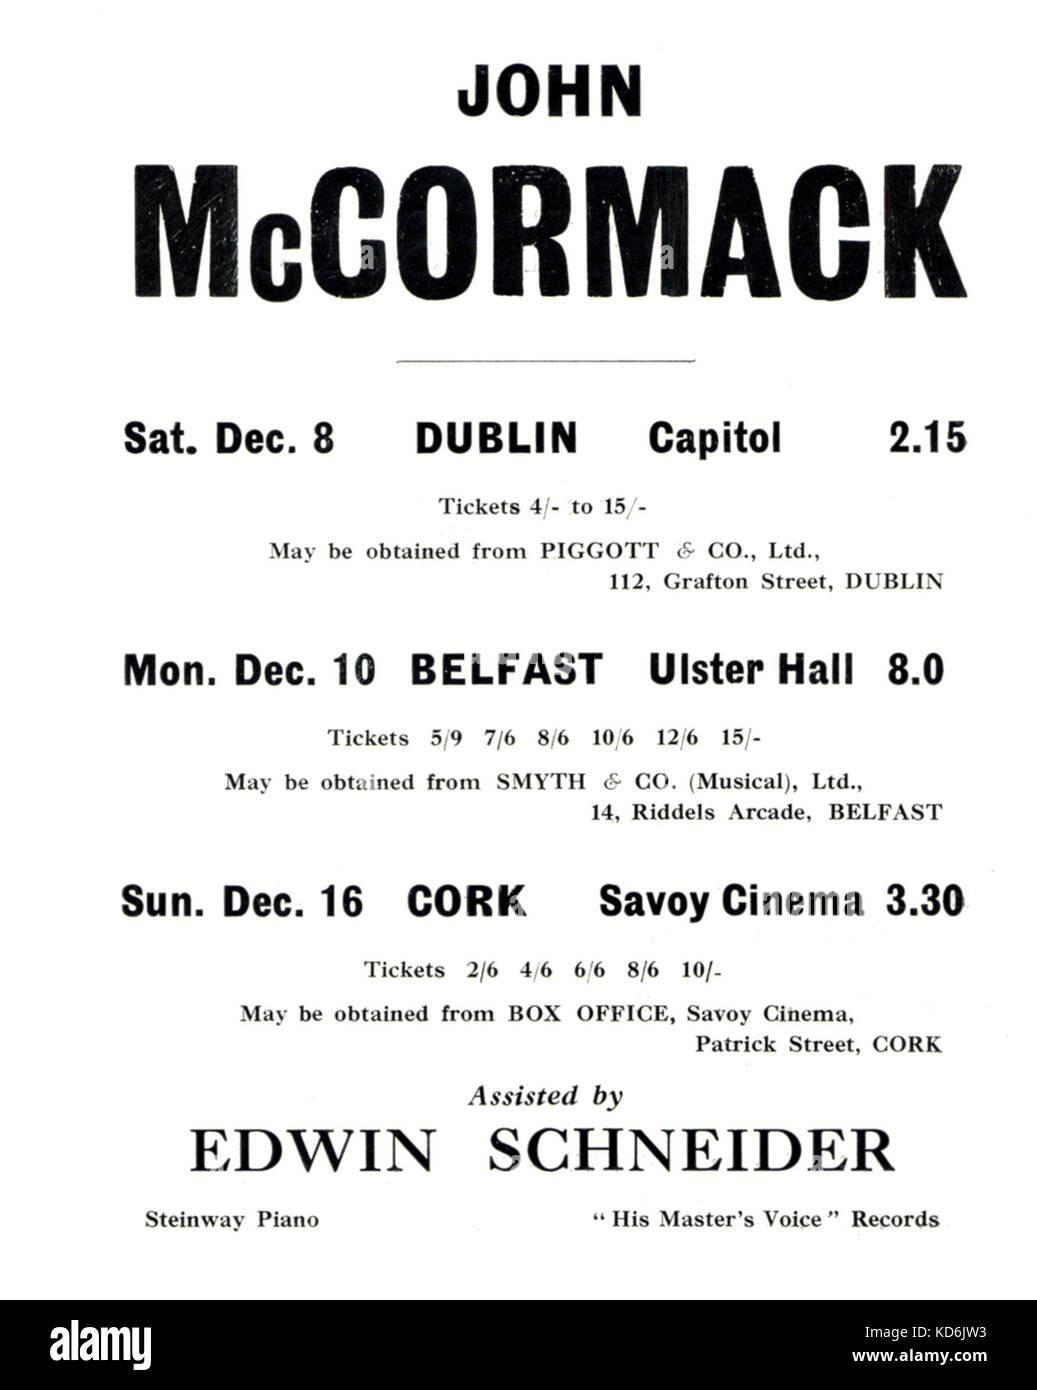 À l'intérieur de la page du programme pour John McCormack's série de concerts. Liste de ses récitals en Irlande, avec Edwin Schneider au piano, début des années 30. Ténor irlandais, 1884-1945. Banque D'Images